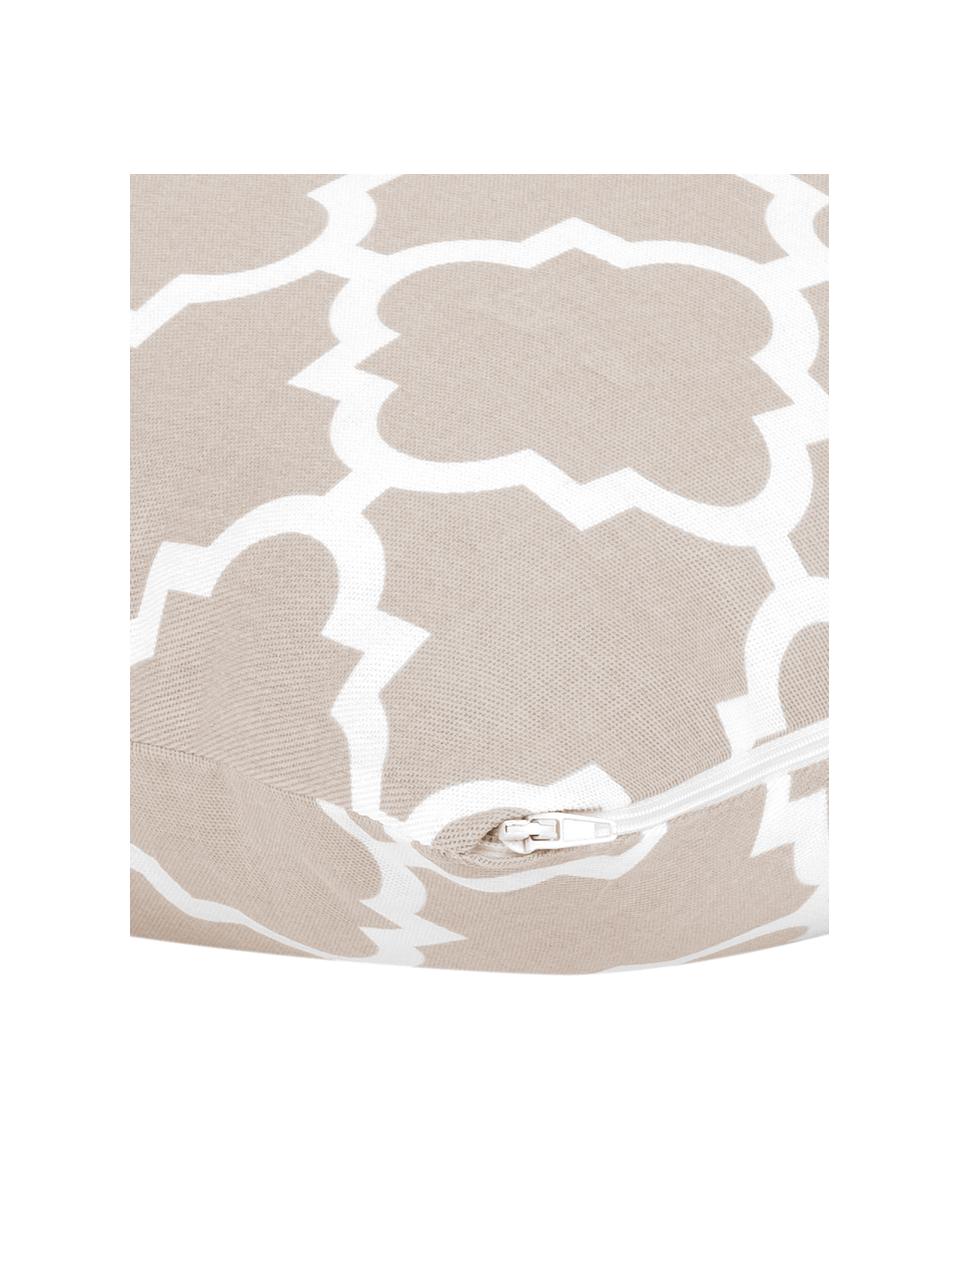 Kissenhülle Lana mit grafischem Muster, 100% Baumwolle, Beige, Weiss, B 45 x L 45 cm